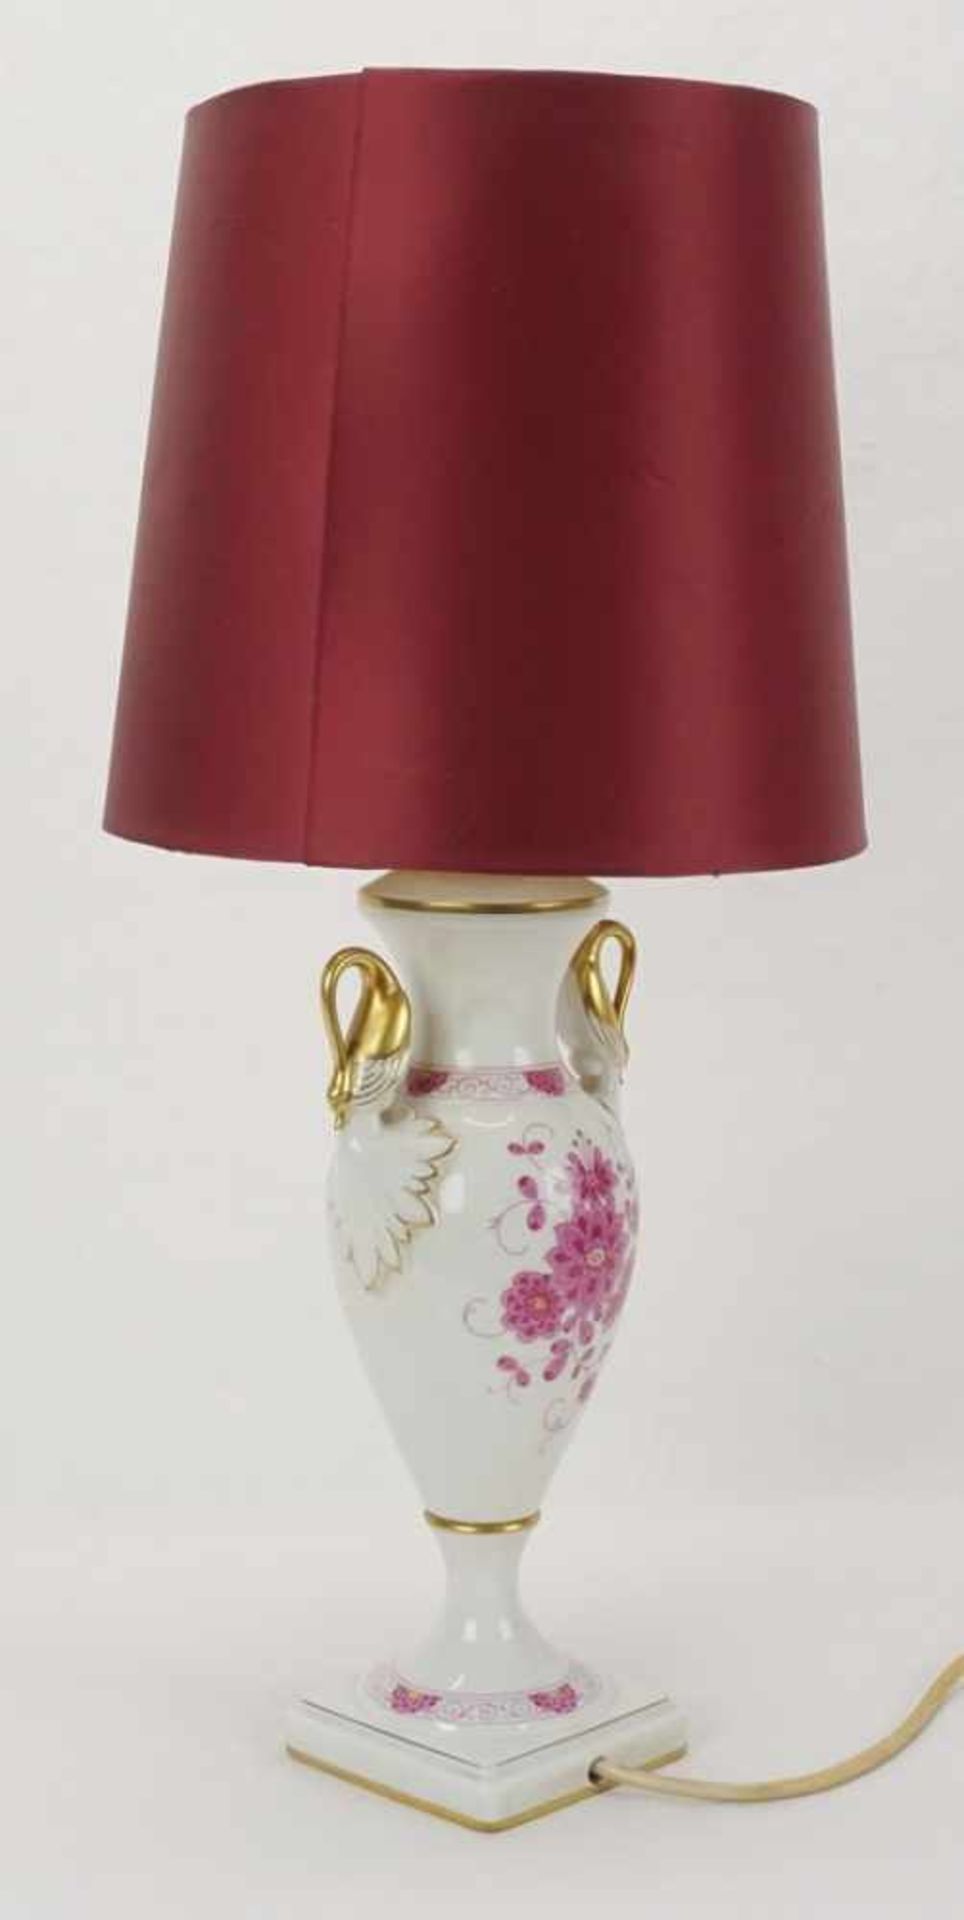 Kaiser Porzellan Tischlampe, 20. Jh.Porzellan, im Boden gemarkt, Korpus in Form einer Henkelvase mit - Image 2 of 3